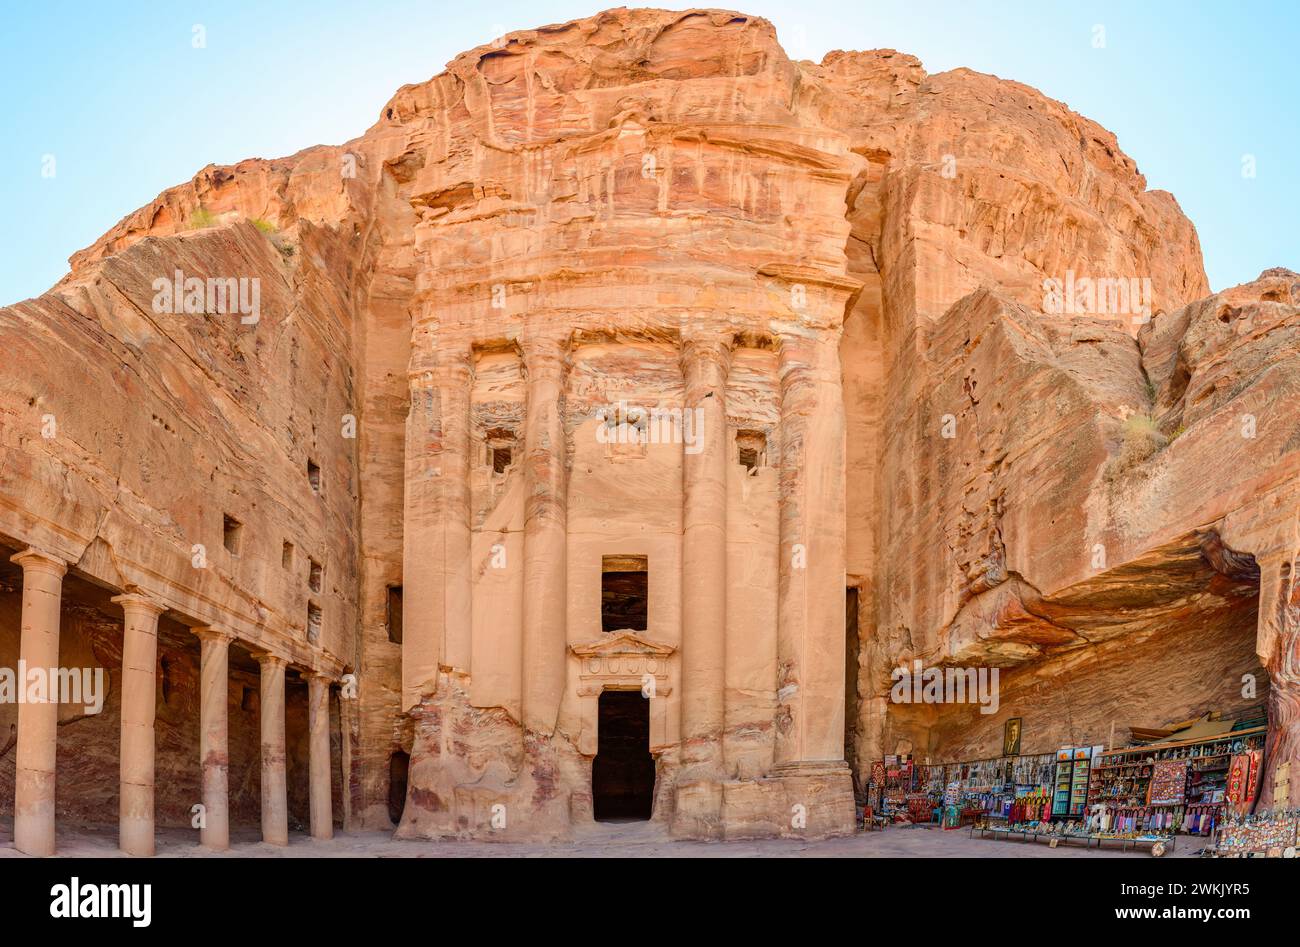 Petra, Jordanie - Une vue de la tombe de l'urne, Petra, site du patrimoine mondial de l'UNESCO, Jordanie, moyen-Orient Banque D'Images